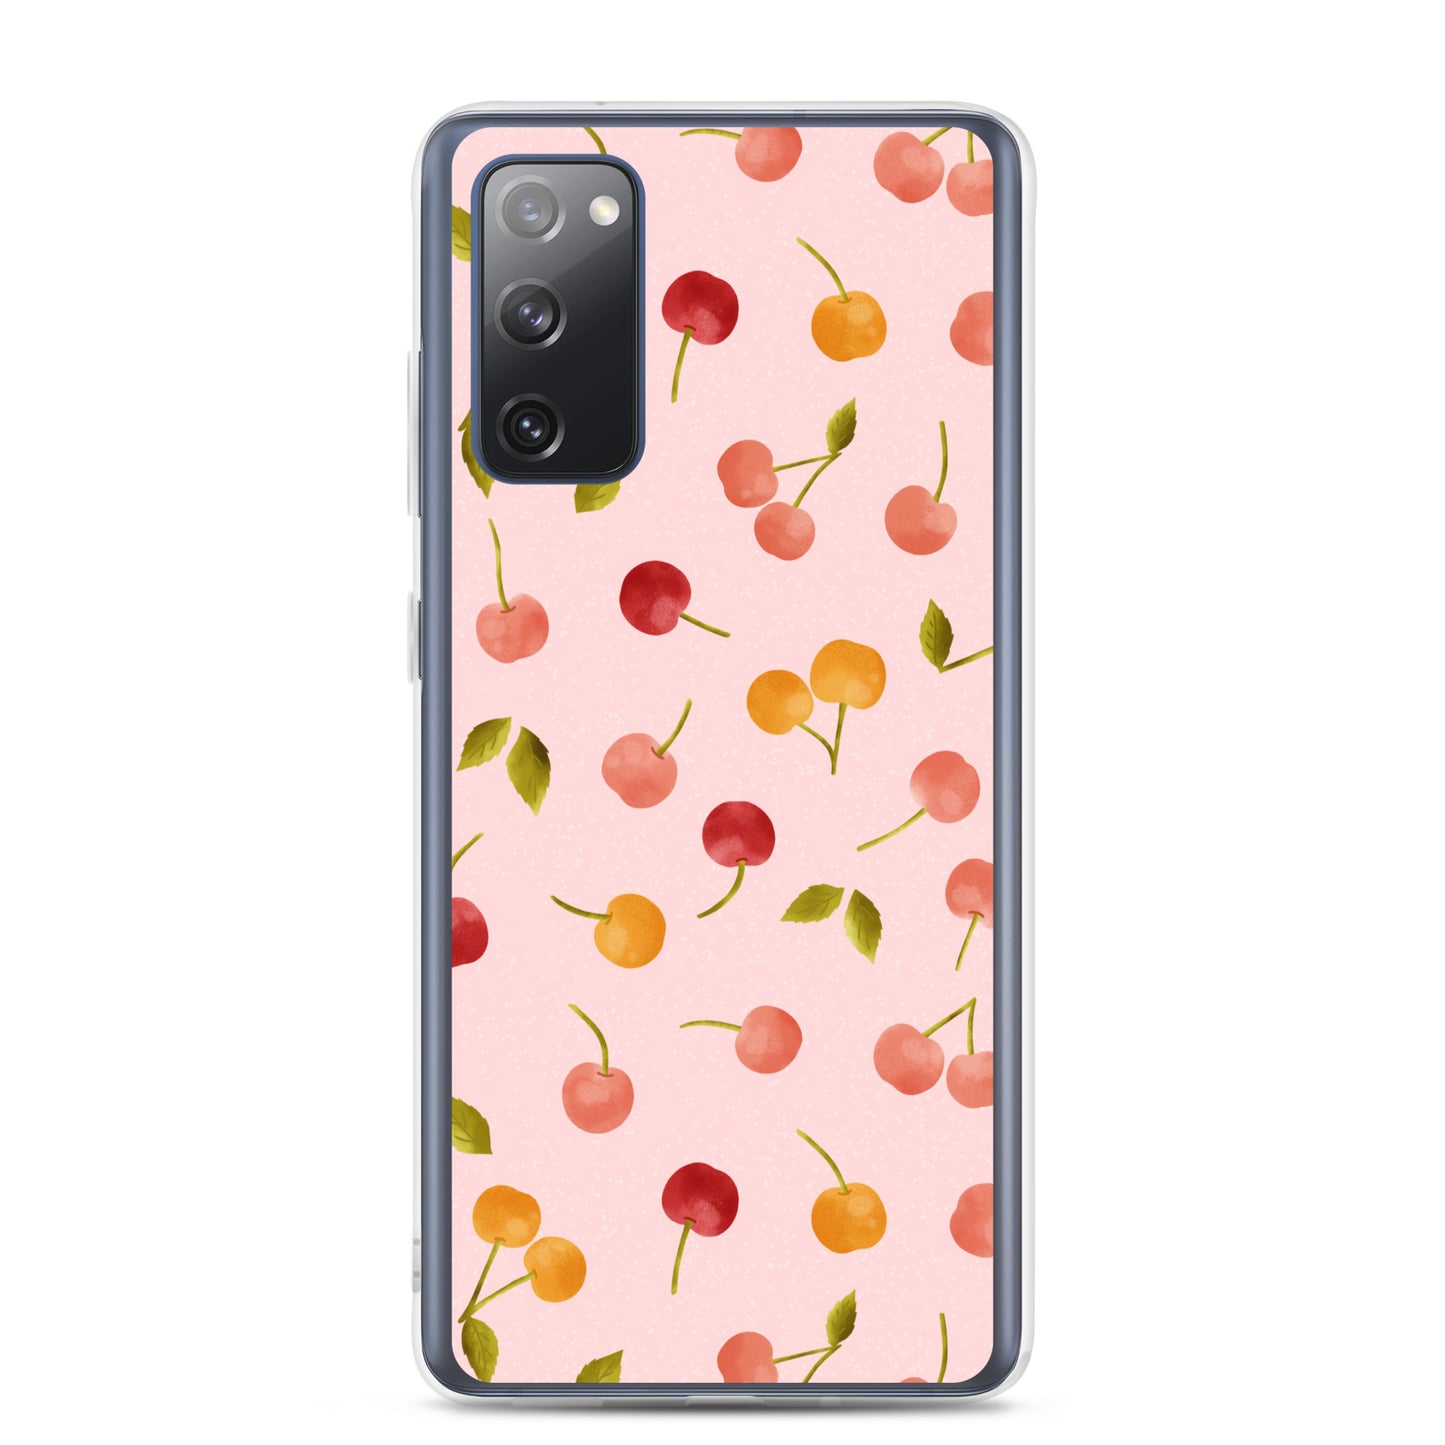 Cherries Samsung case